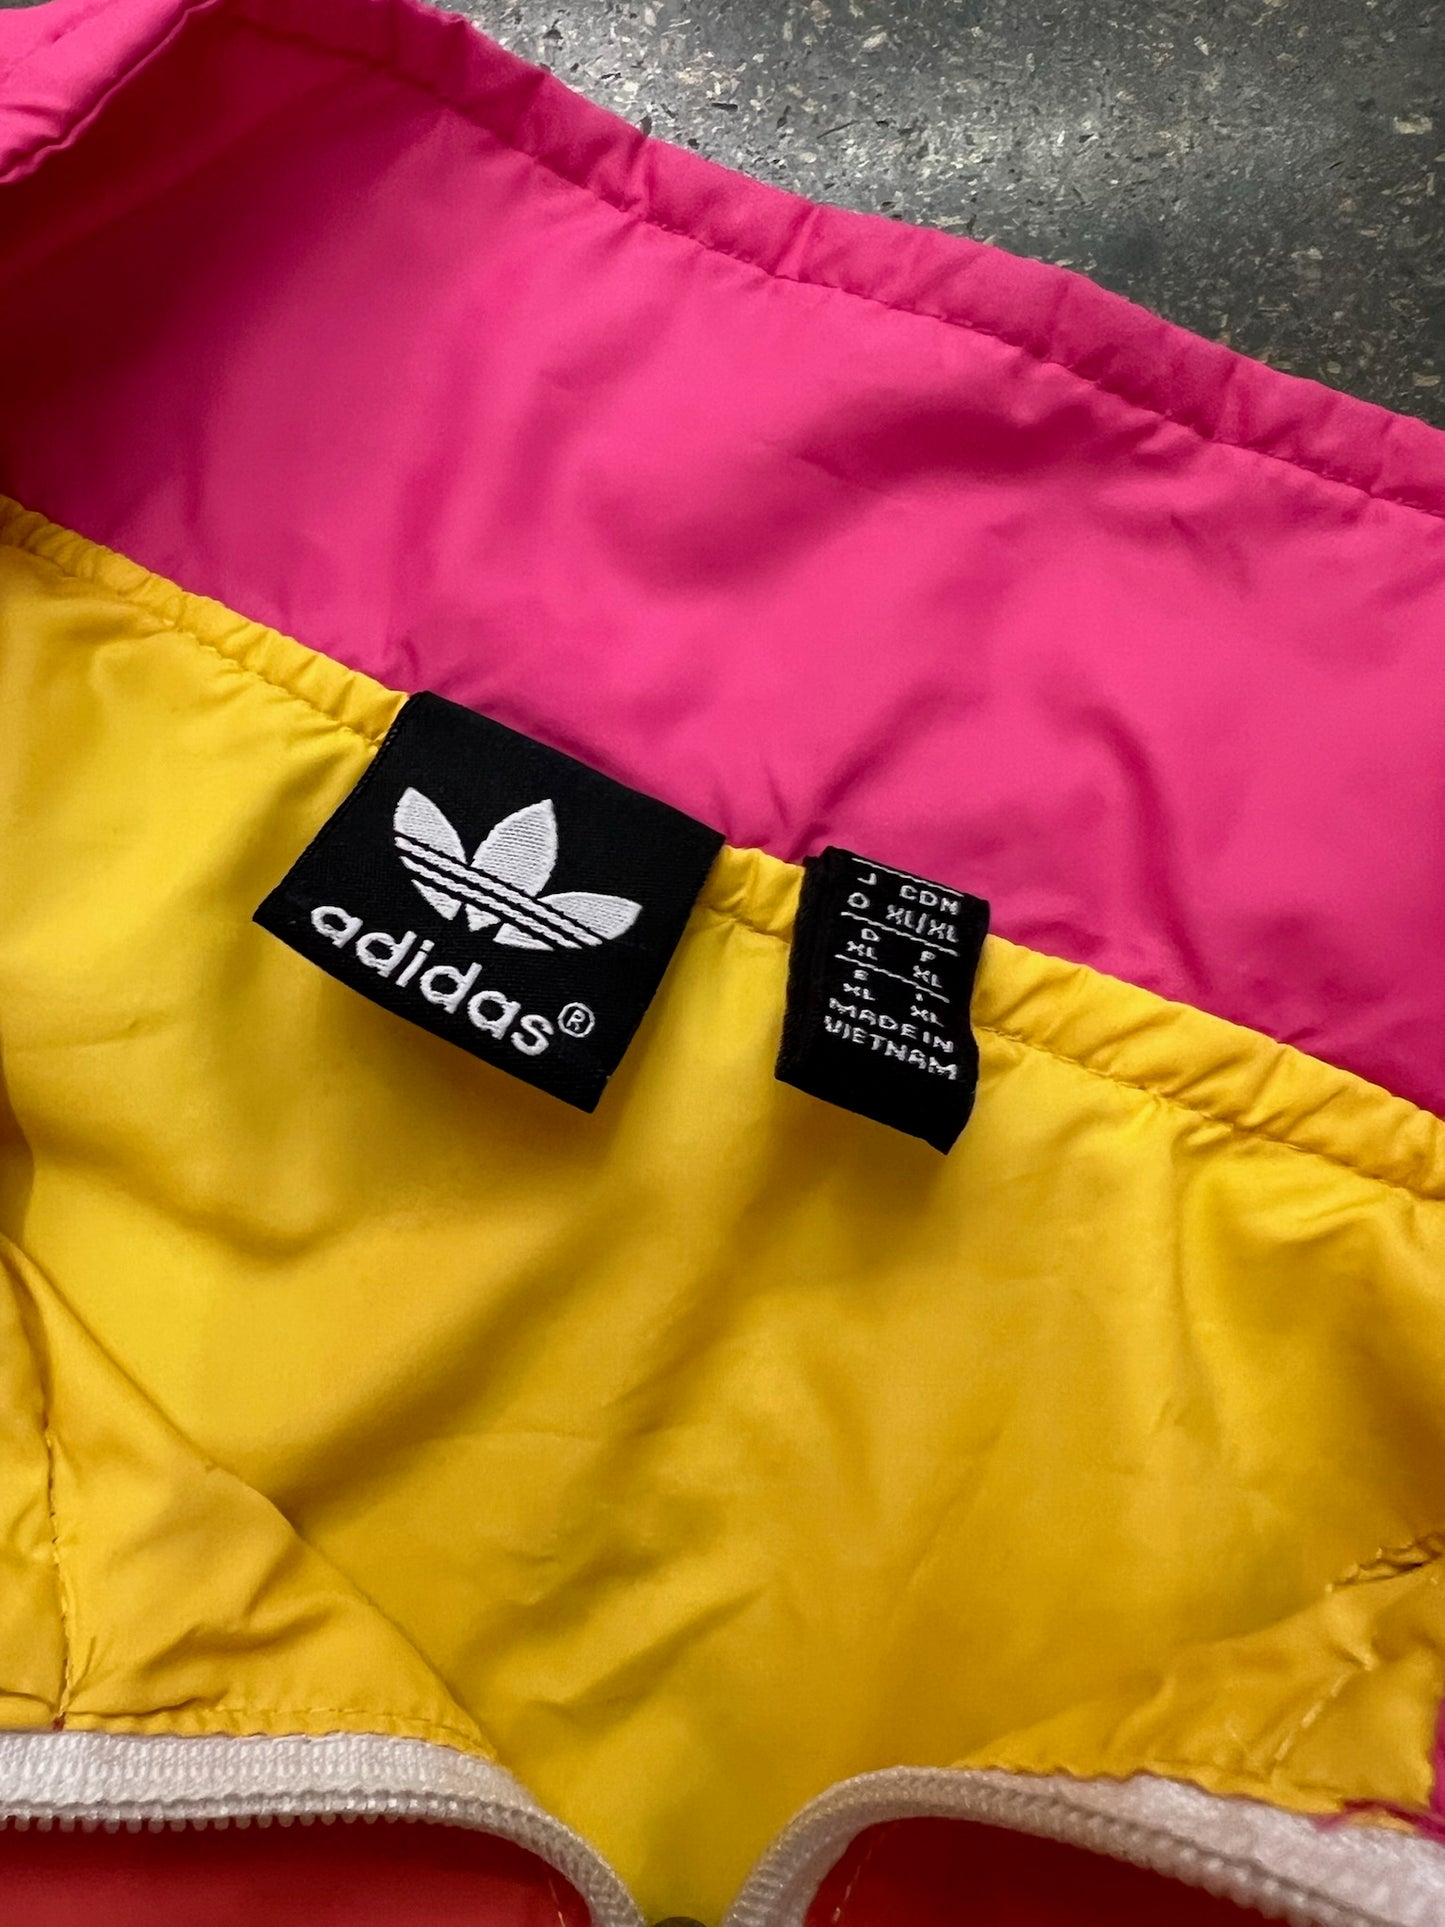 Adidas Multi-Coloured Light Jacket Size XL